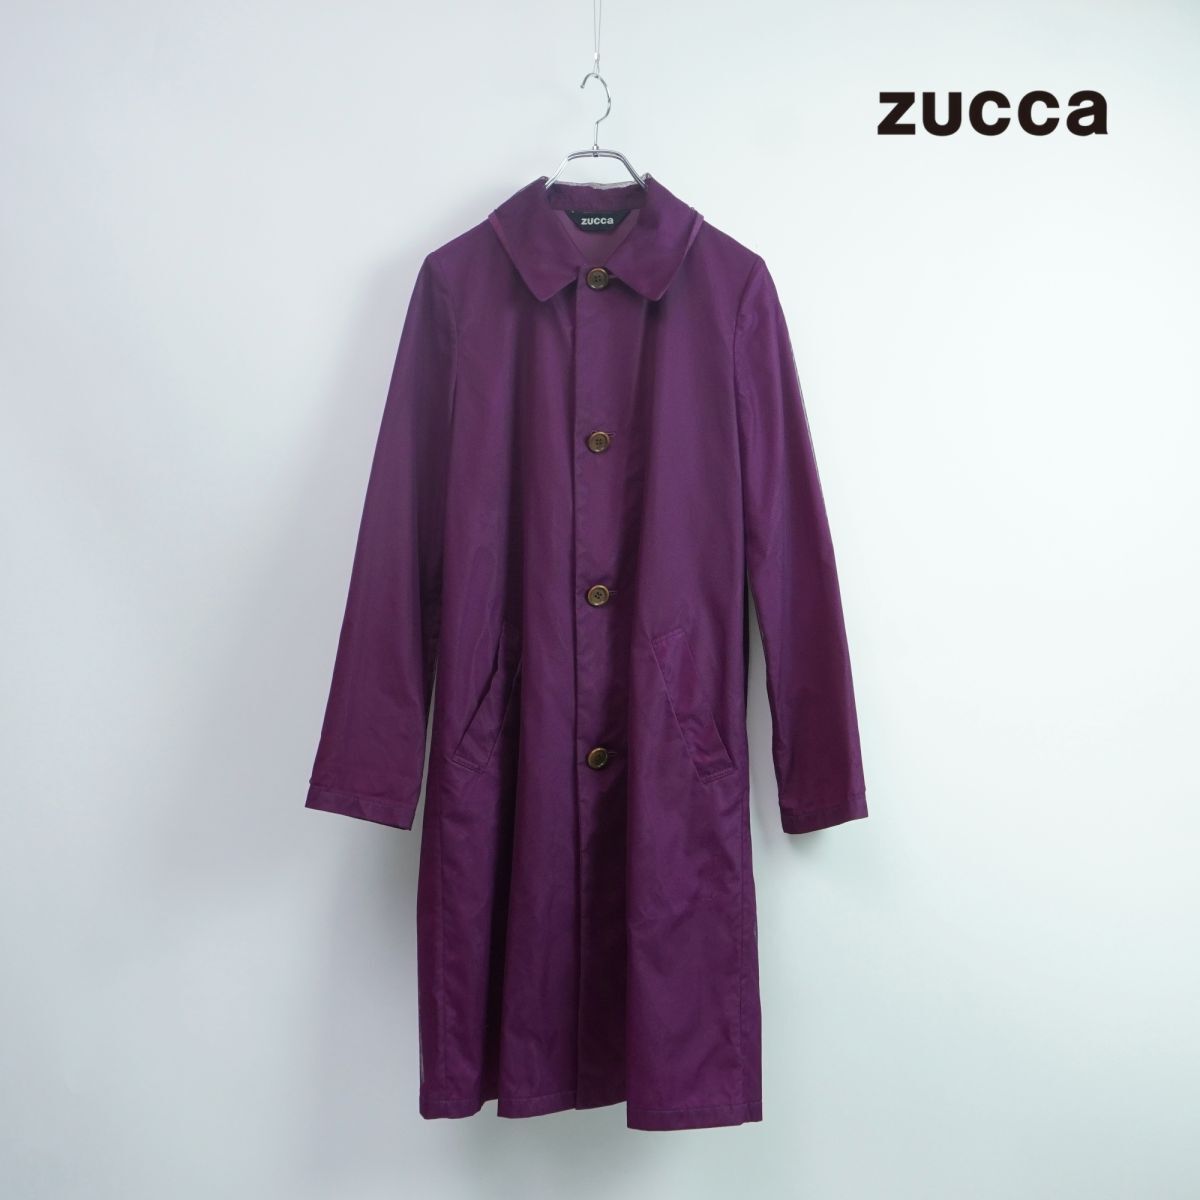 ZUcca ズッカ ポリエステル メッシュ素材 ステンカラーロングコート レディース アウター 紫 パープル サイズM*PC246_画像1